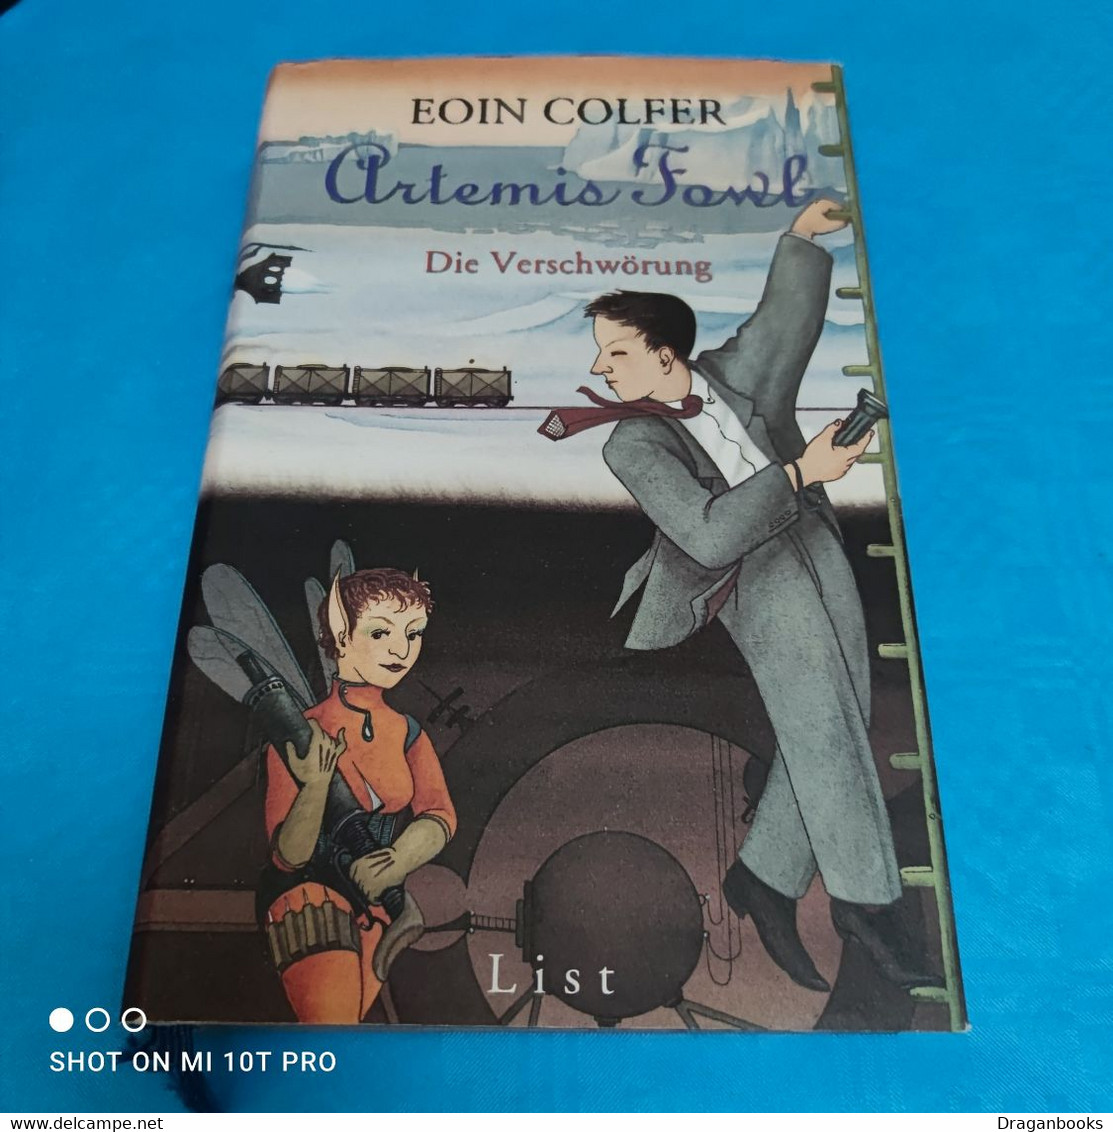 Eoin Colfer - Artemis Fowl - Die Verschwörung - Adventure